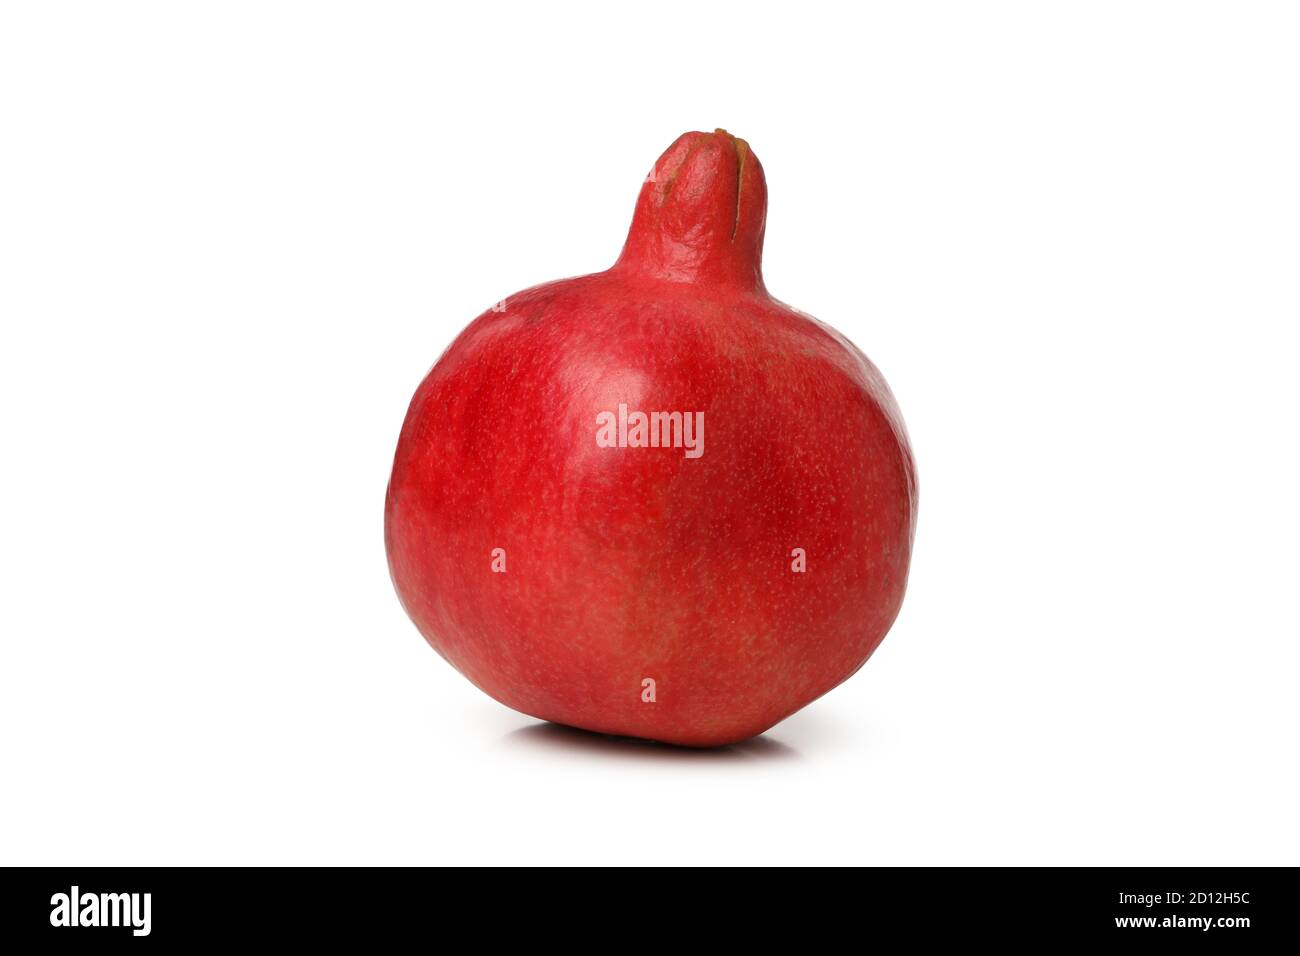 Ripe fresh pomegranate isolated on white background Stock Photo